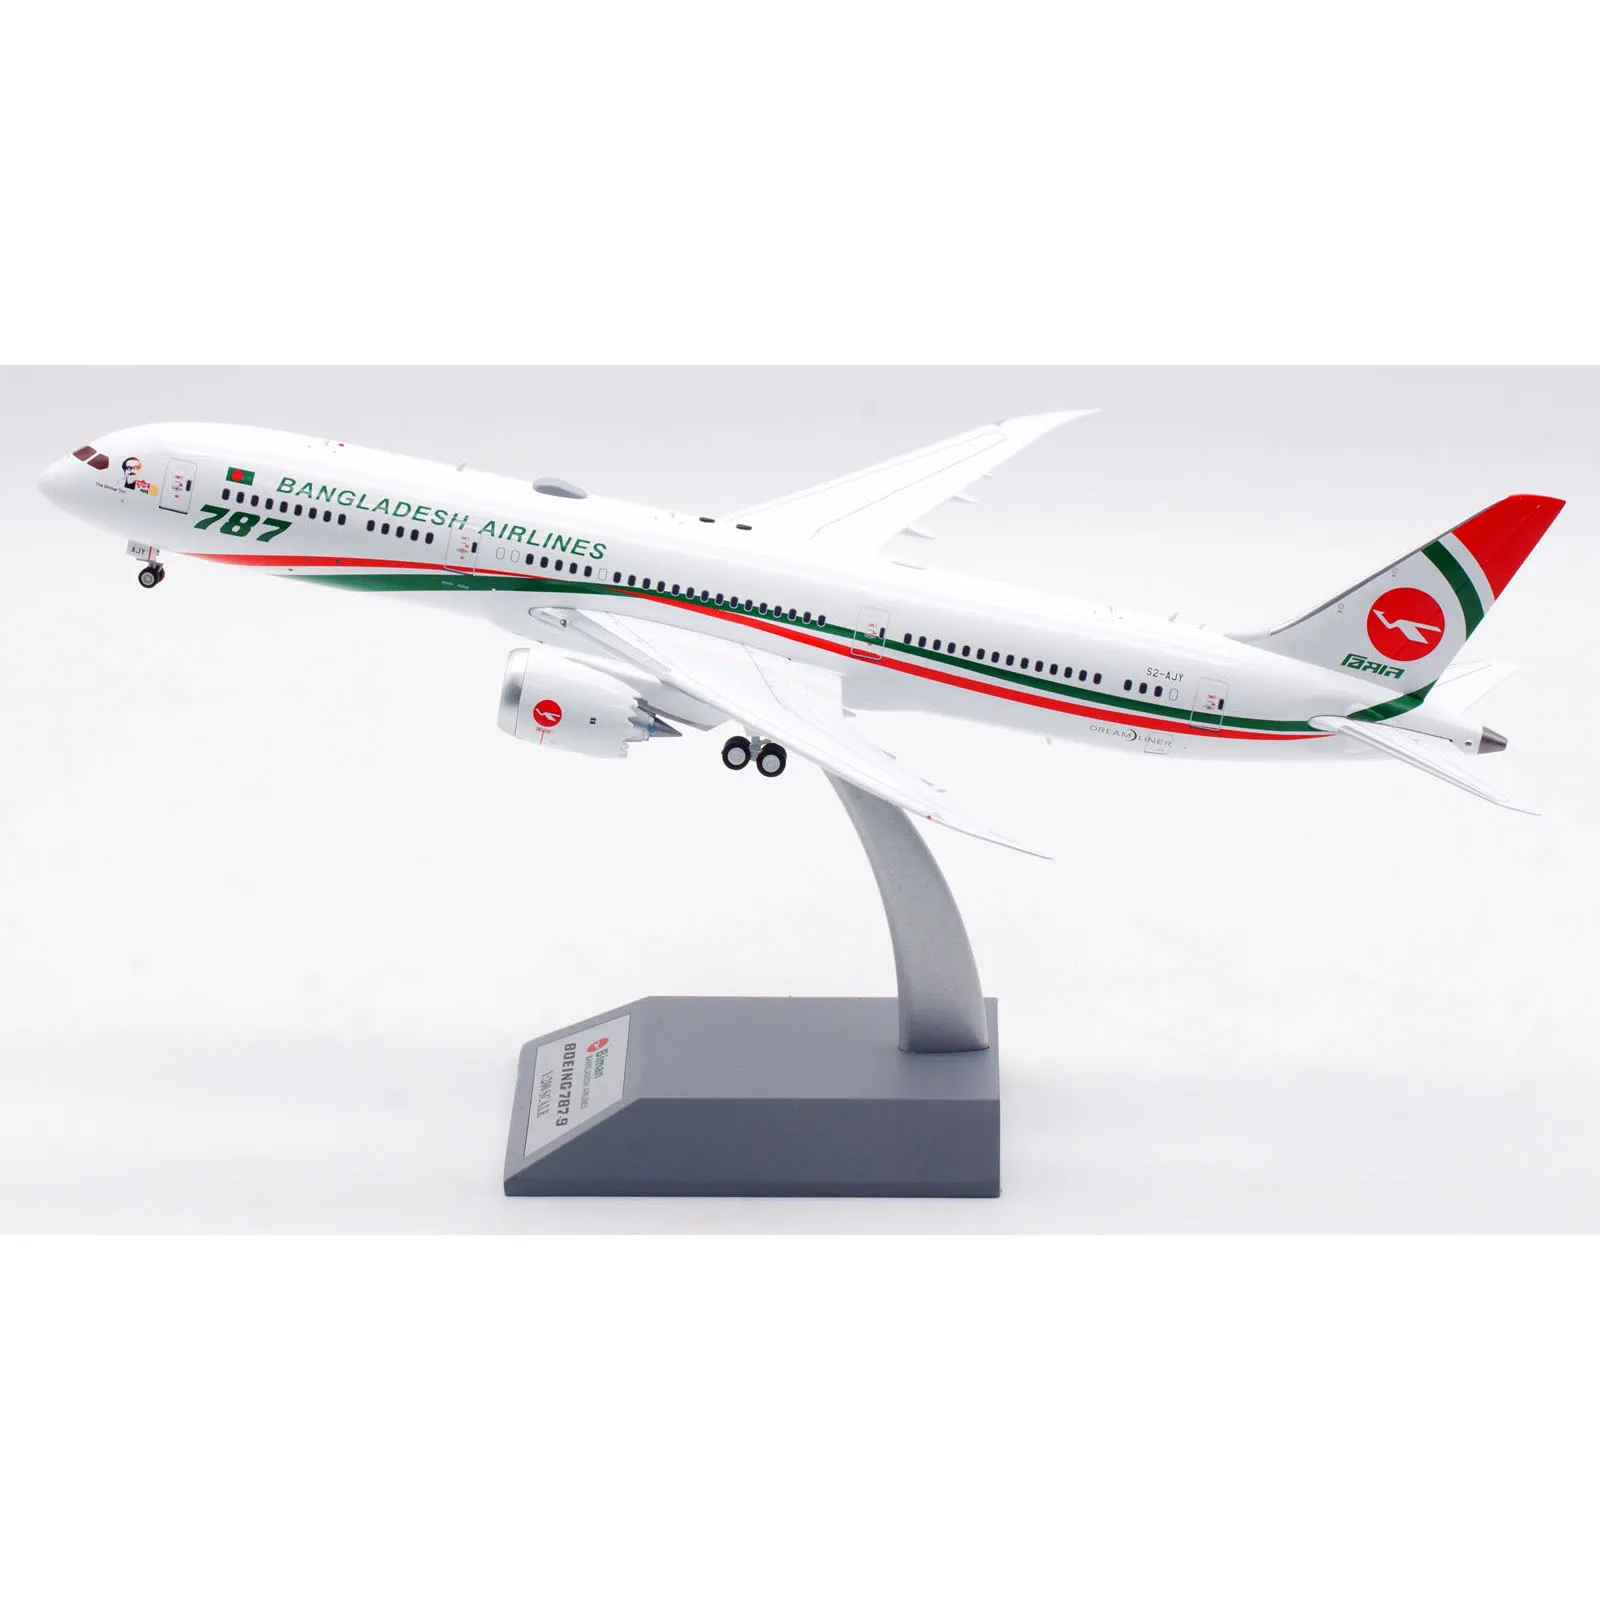 IF789EY1123 samolot kolekcjonerski prezent w locie 1:200 Biman Bangladesh linie lotnicze B787-9 odlewu Model samolotu S2-AJY